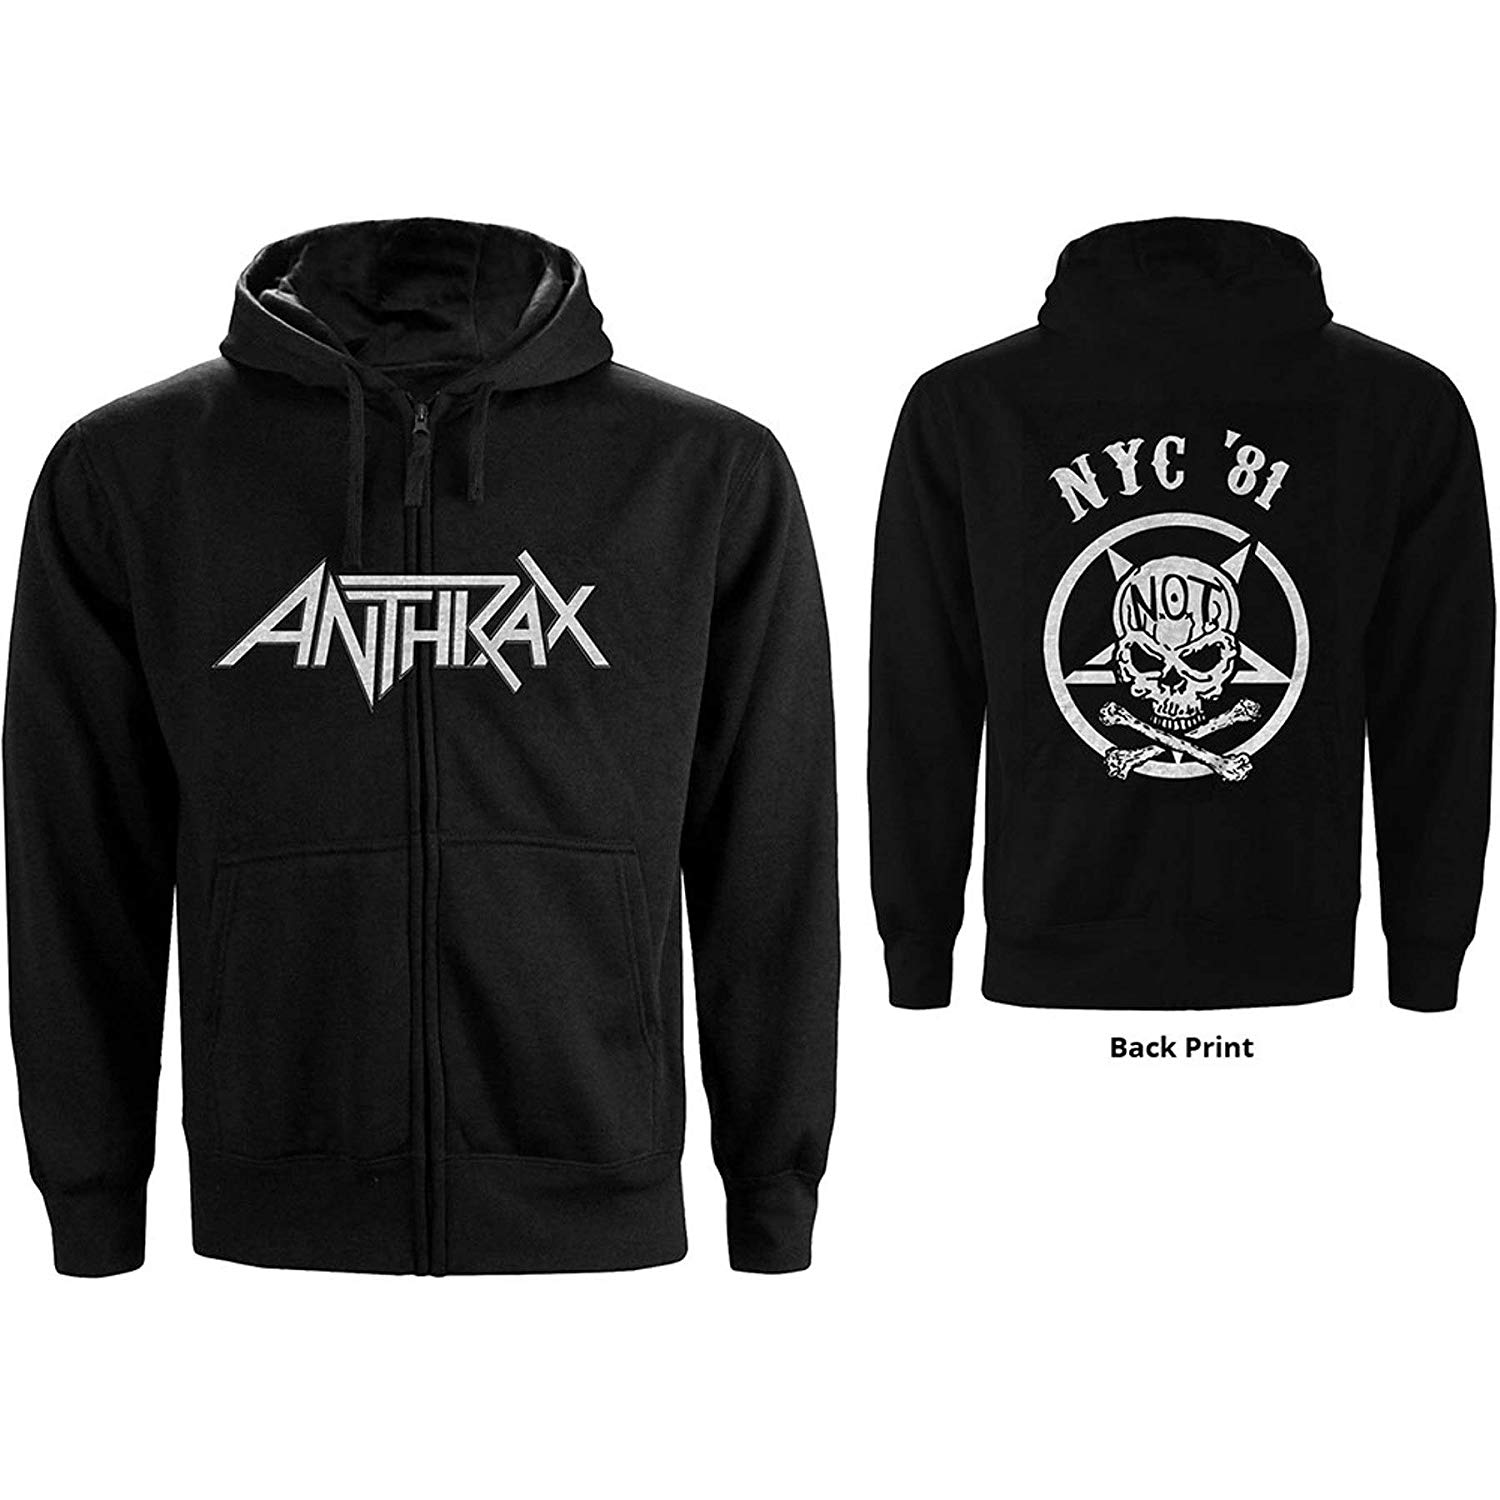 Abbigliamento Anthrax: Zipped Not Man Nyc (Felpa Con Cappuccio Unisex Tg. M) NUOVO SIGILLATO SUBITO DISPONIBILE